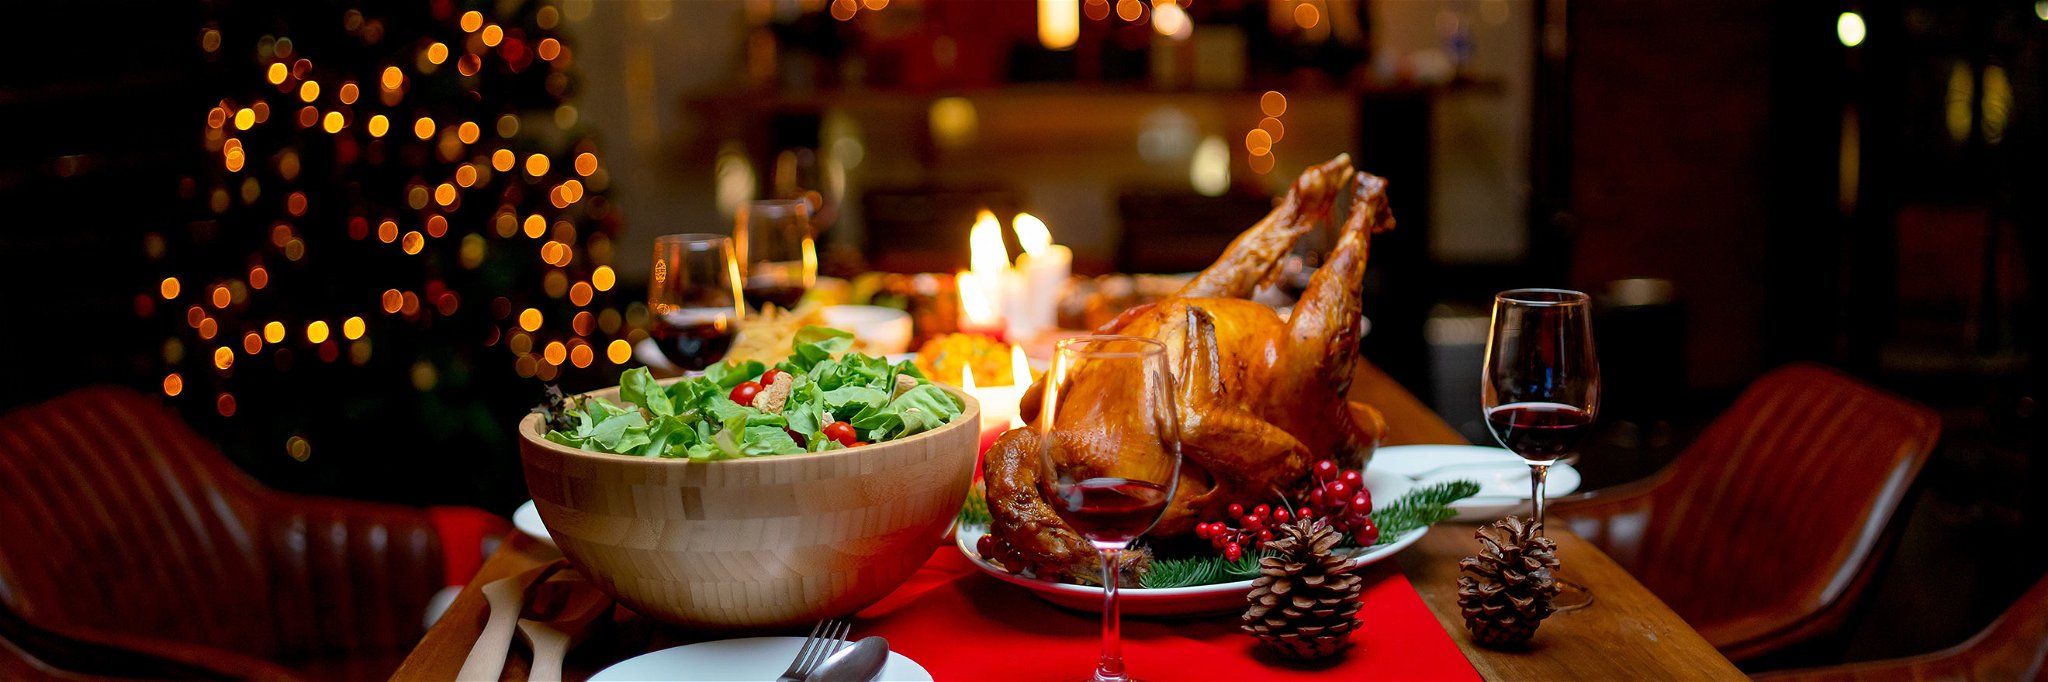 Was findet sich hierzulande am häufigsten auf den Tellern zum traditionellen Weihnachtsessen?